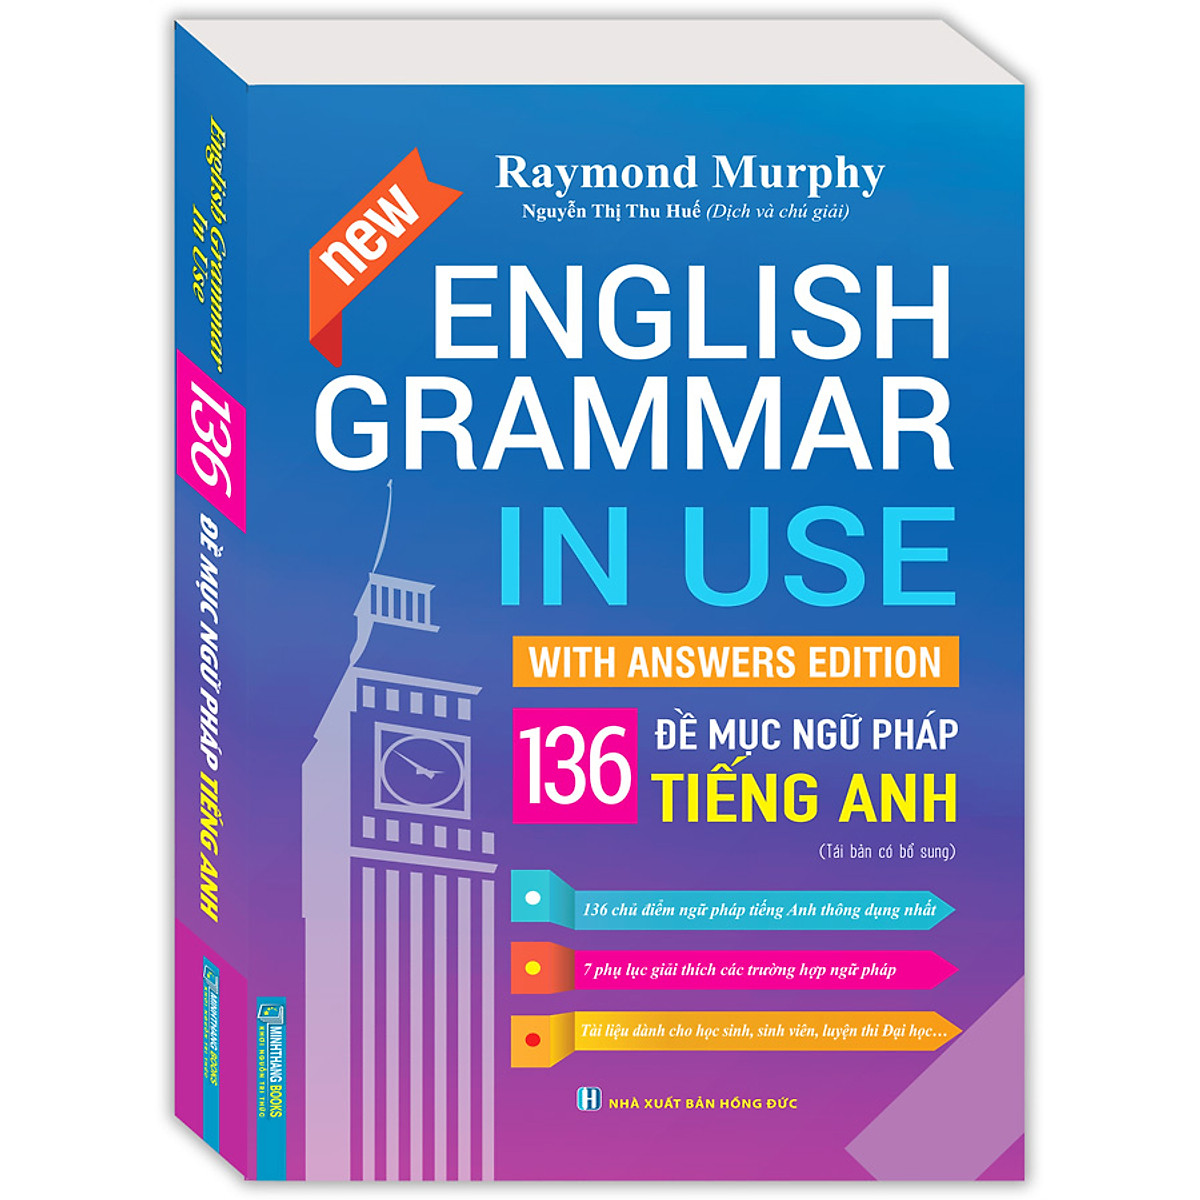 English Grammar In Use - 136 Đề Mục Ngữ Pháp Tiếng Anh (Bản Màu)